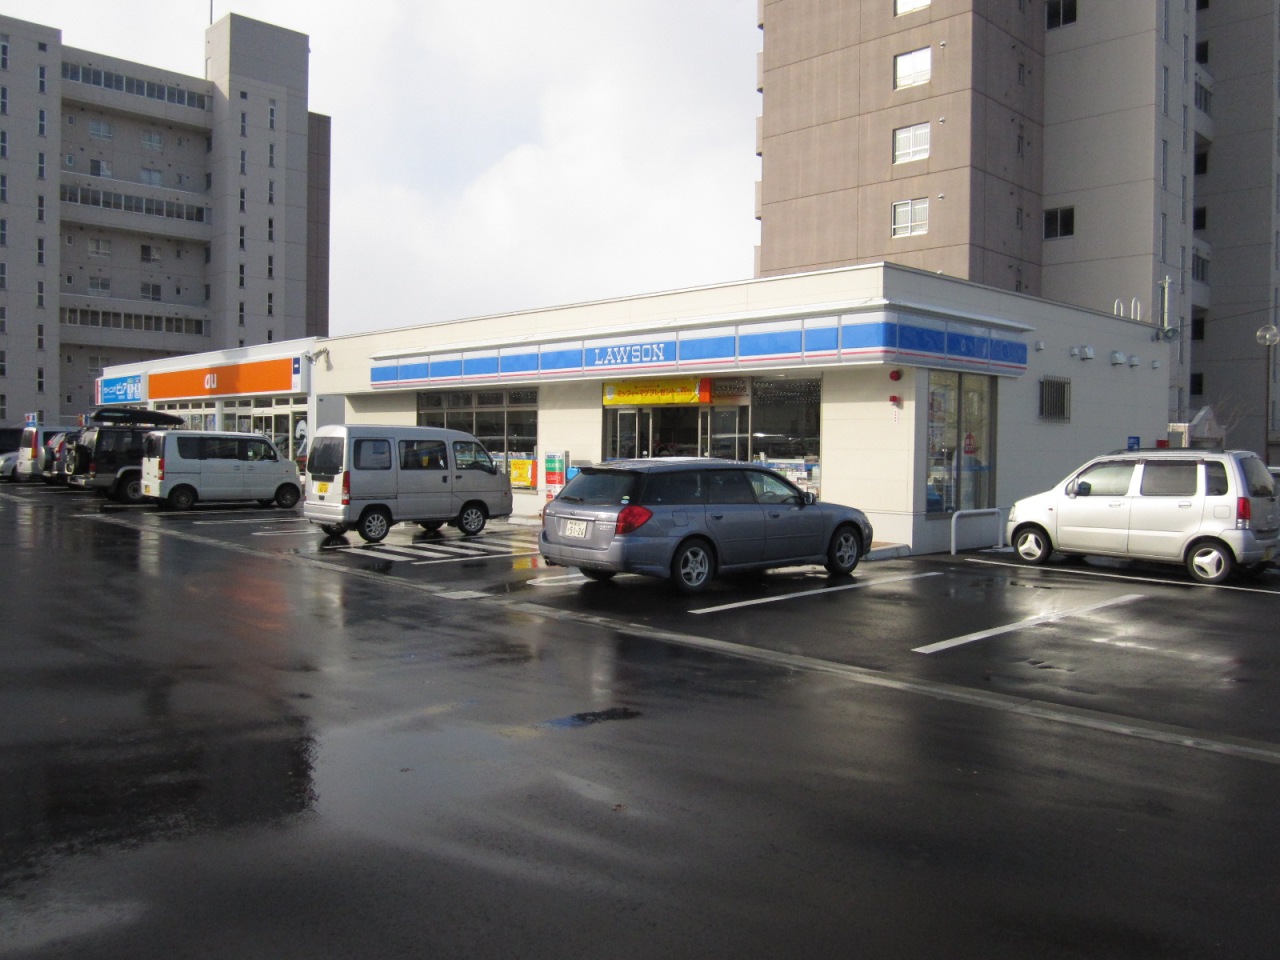 Convenience store. Lawson Sapporo Atsubetsu central store up (convenience store) 163m